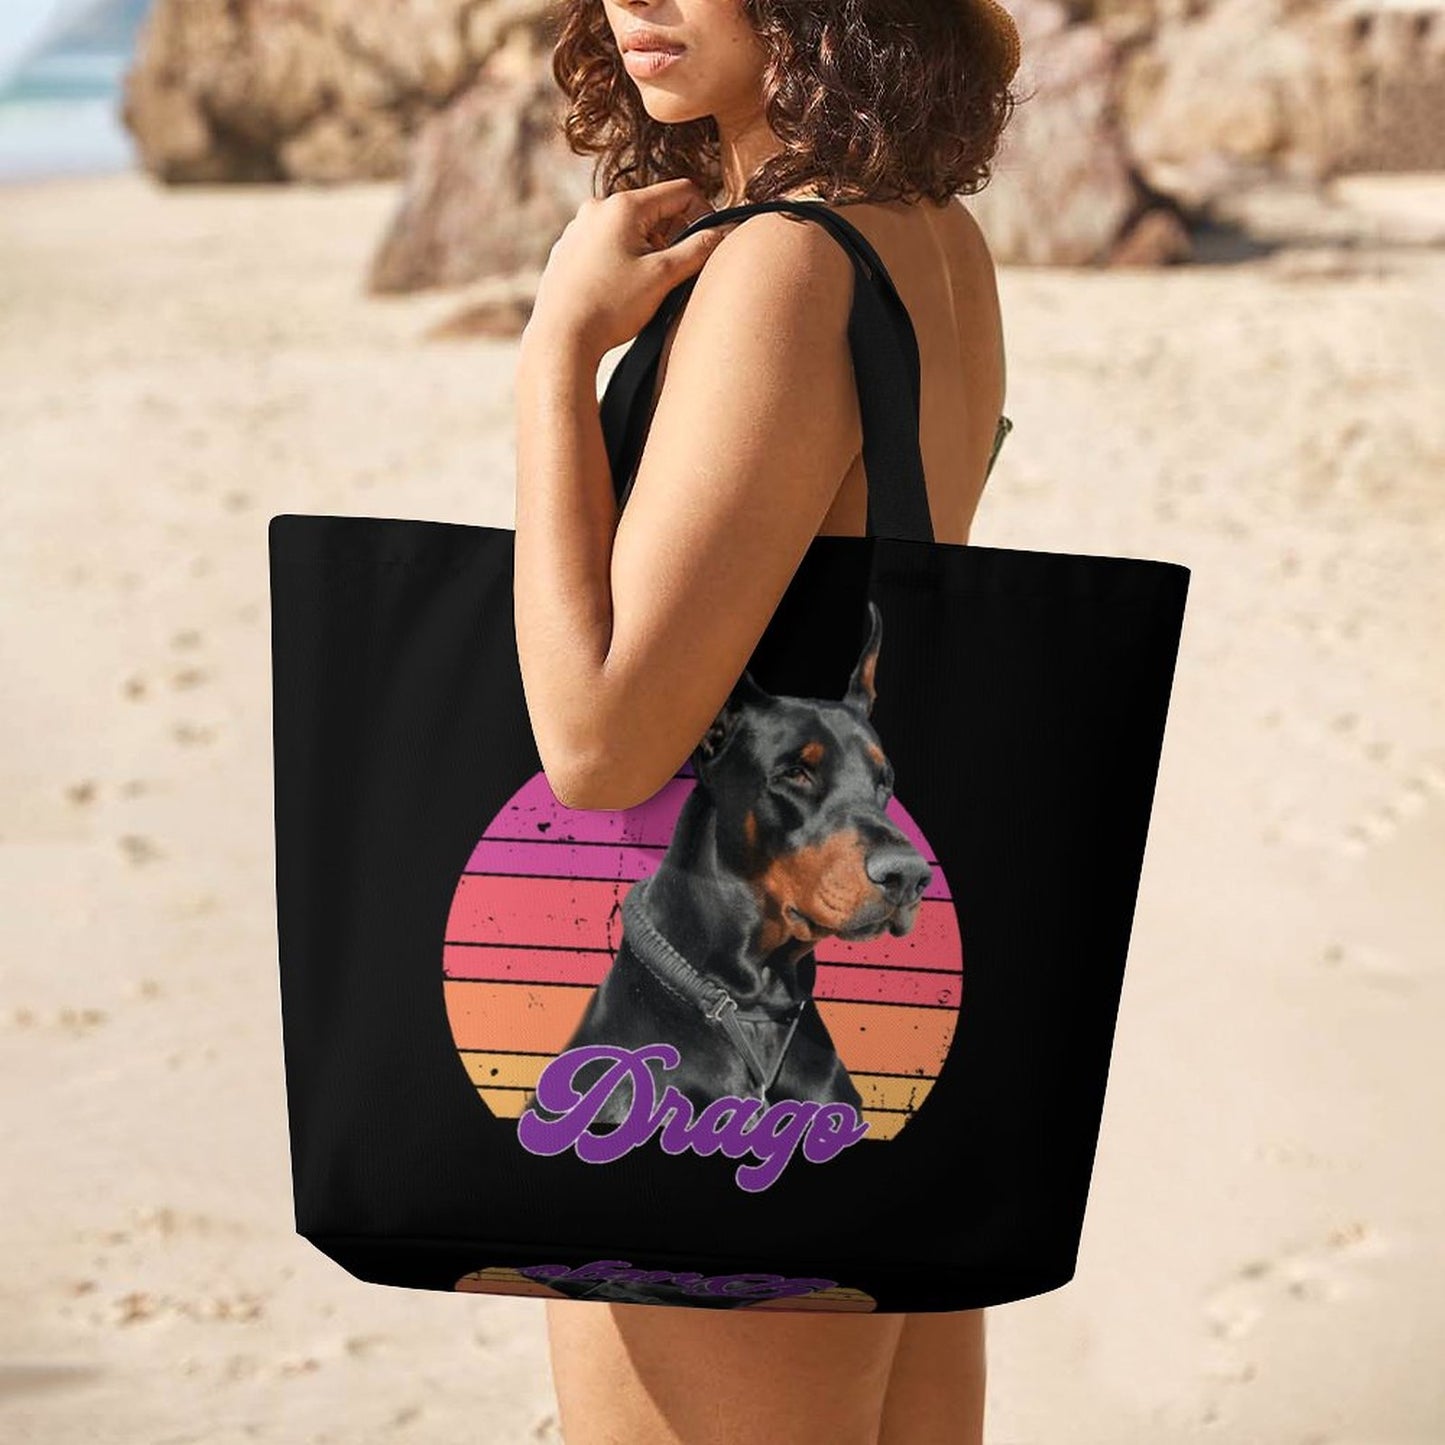 DRAGO - Large One Shoulder Shopping Bag